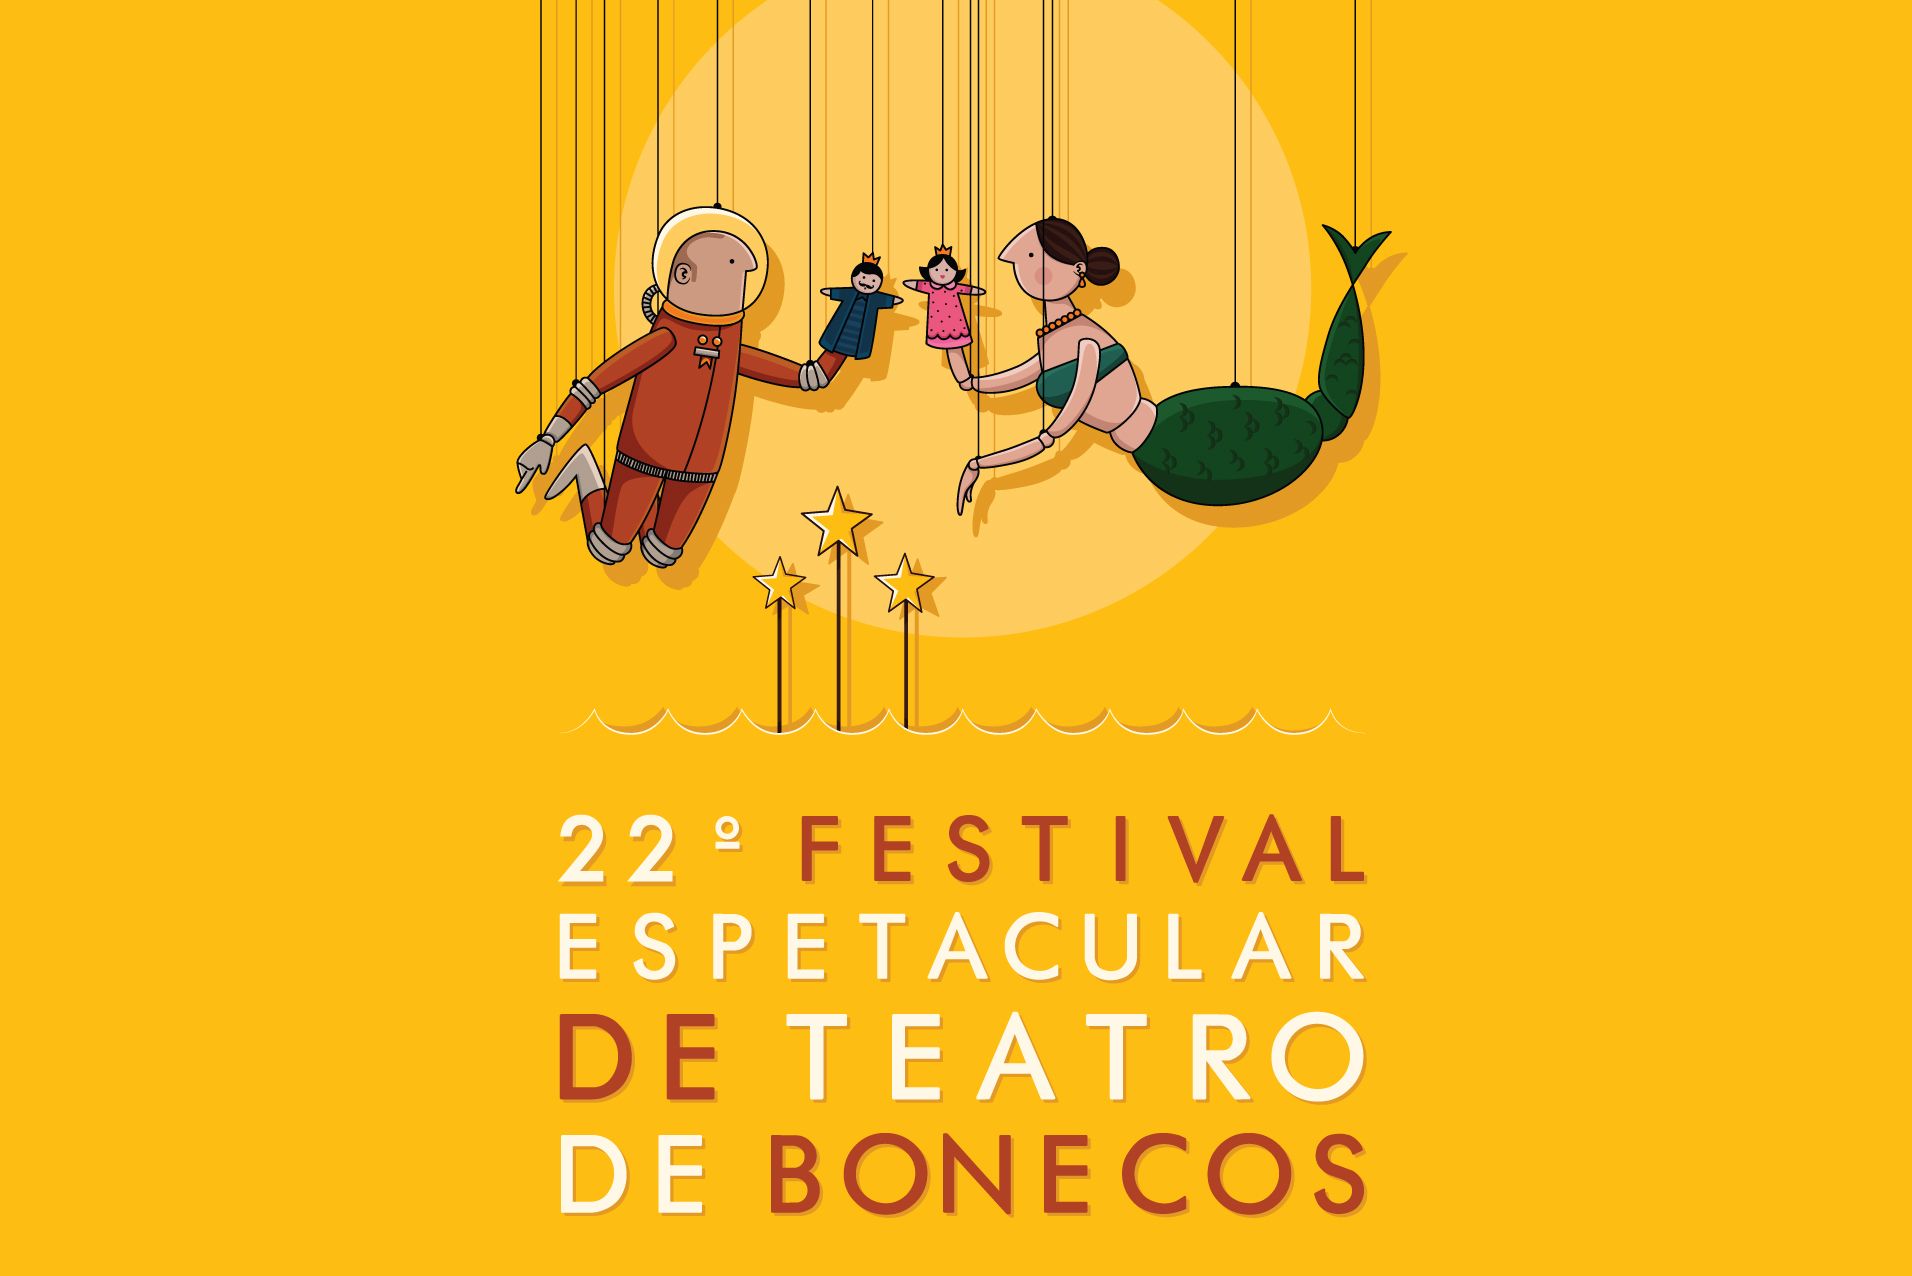  Festival de Teatro de Bonecos começa na próxima semana em Curitiba